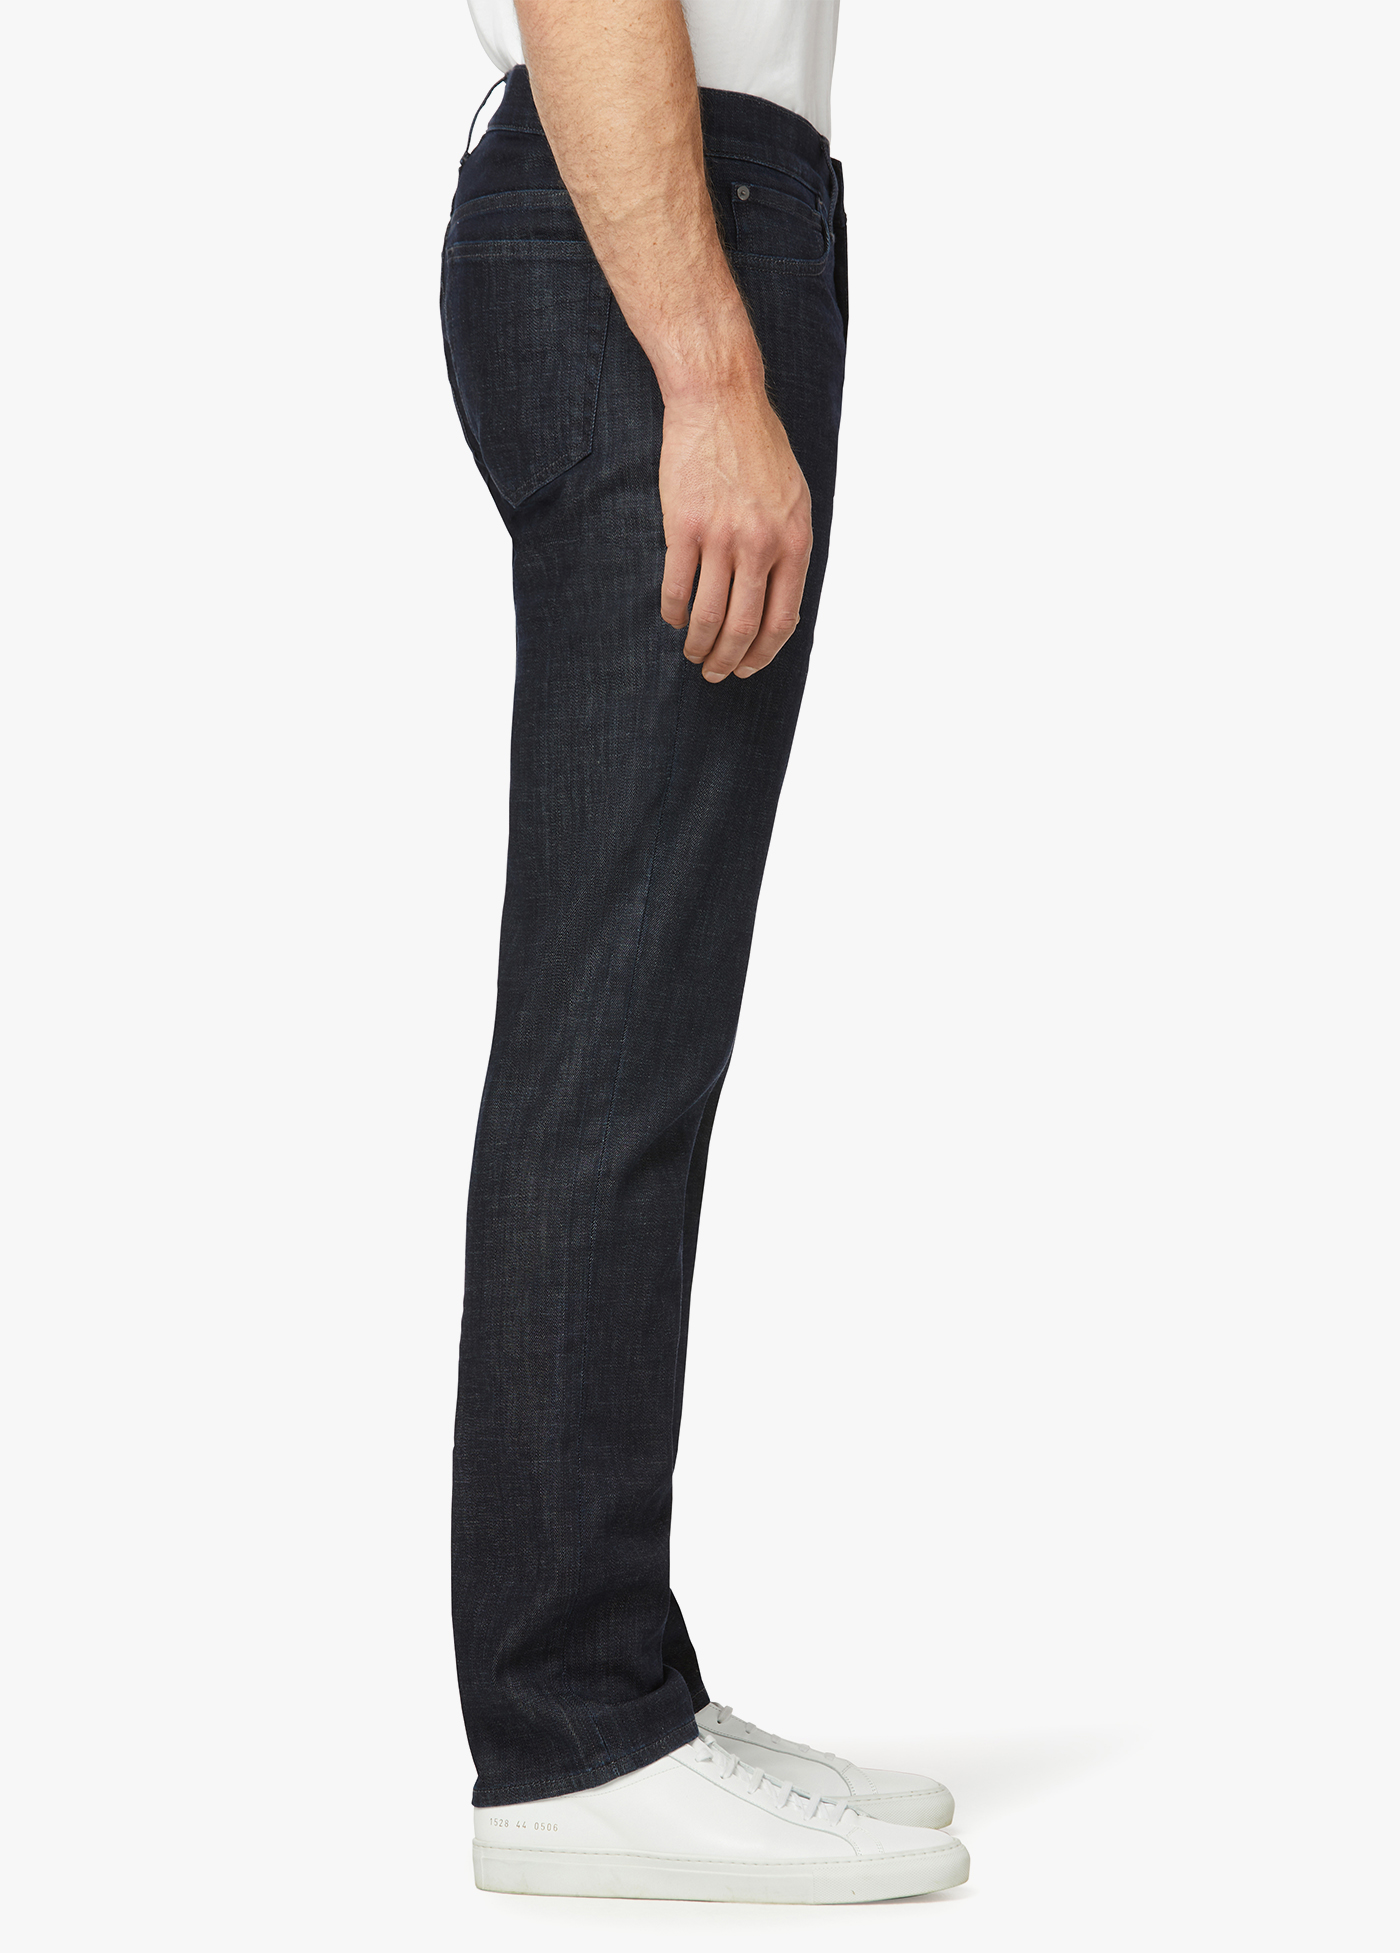 Joe \u2019s Slim jeans blauw casual uitstraling Mode Spijkerbroeken Slim jeans Joe ’s 